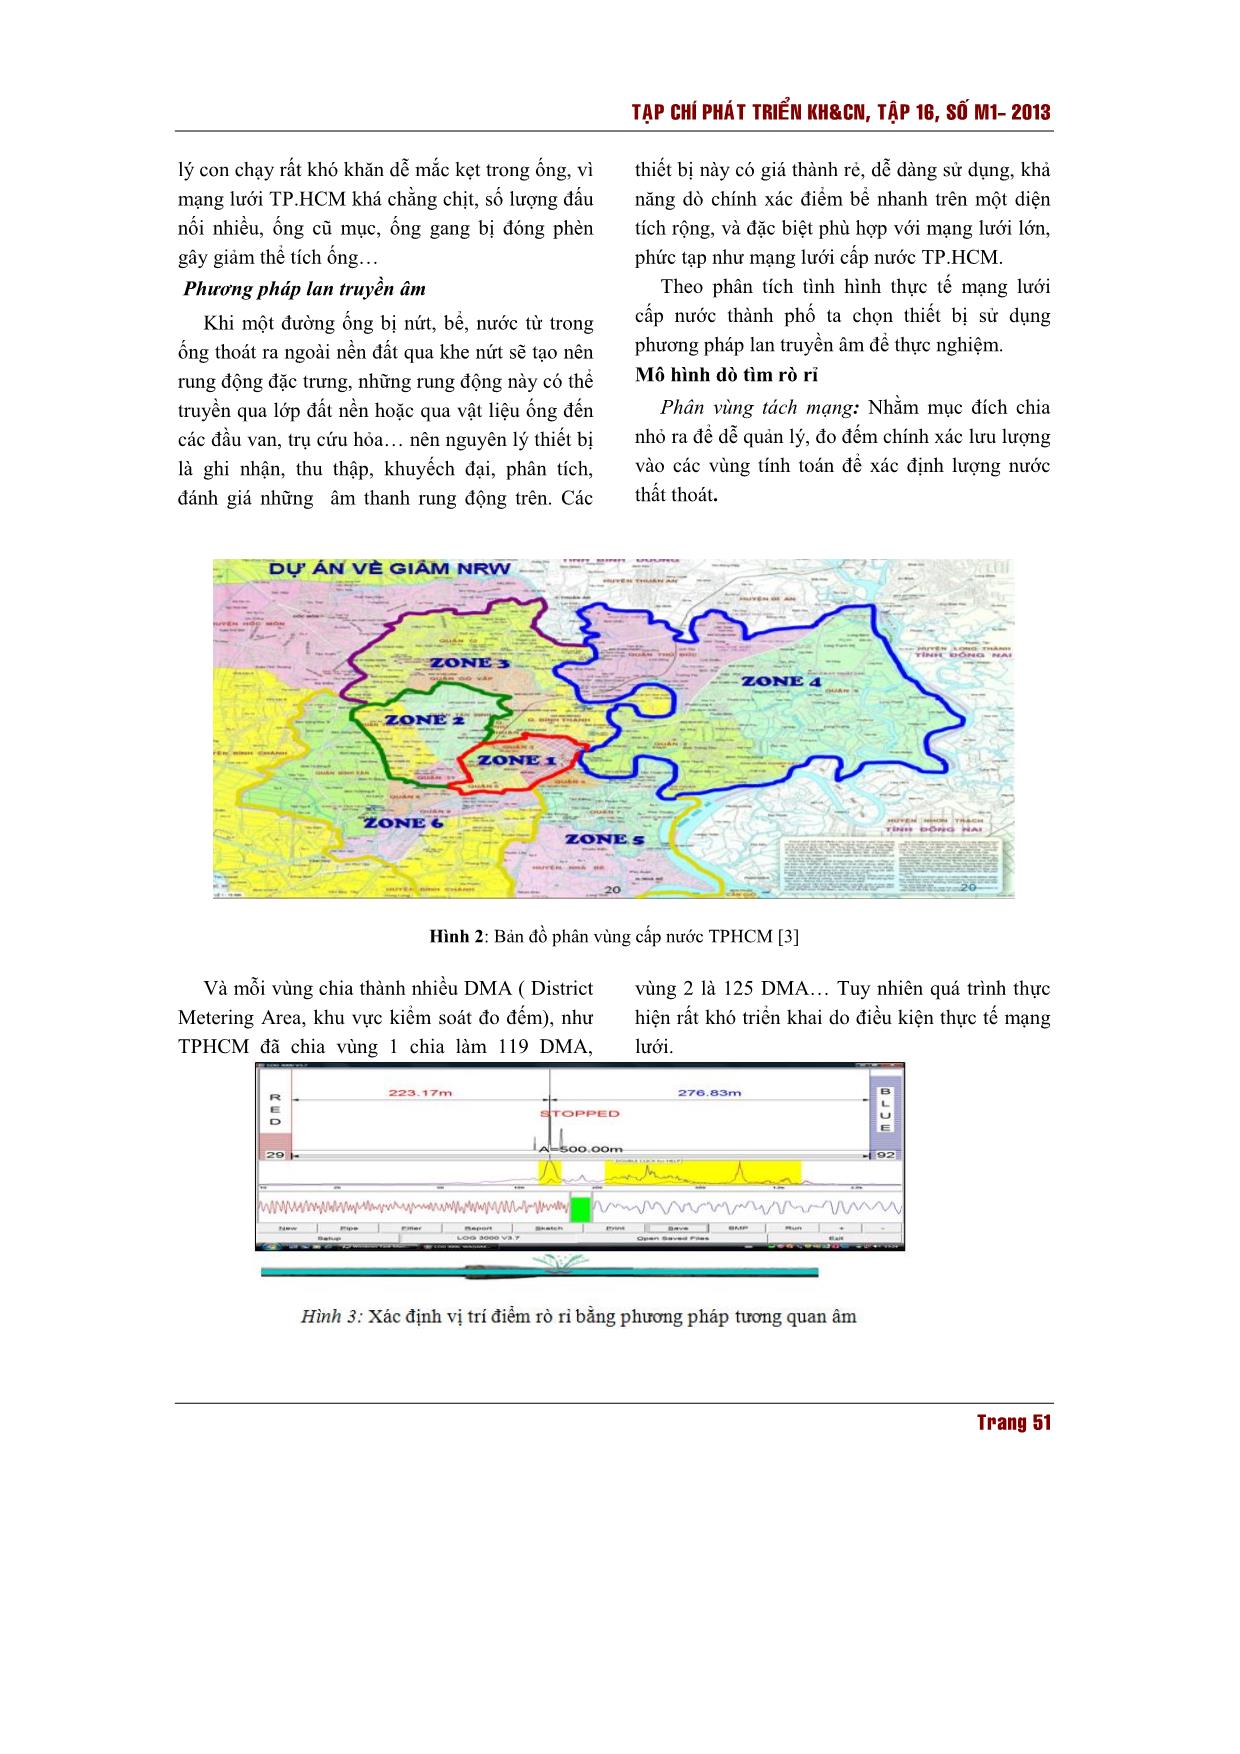 Nghiên cứu giải pháp kỹ thuật - công nghệ nhằm chống thất thoát nước cho hệ thống cung cấp nước sạch thành phố Hồ Chí Minh trang 3